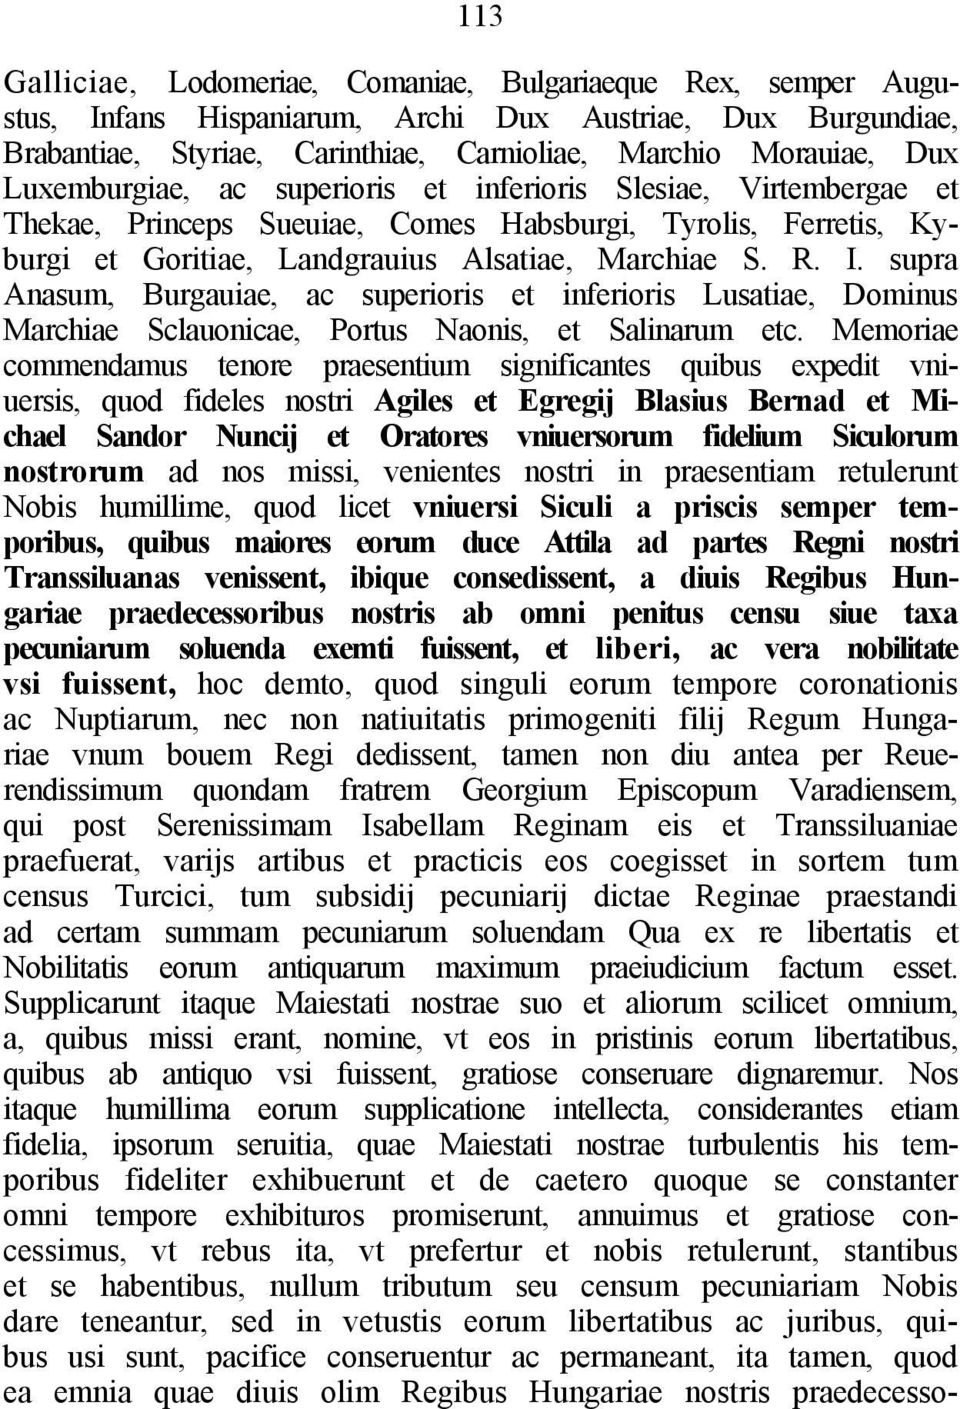 supra Anasum, Burgauiae, ac superioris et inferioris Lusatiae, Dominus Marchiae Sclauonicae, Portus Naonis, et Salinarum etc.